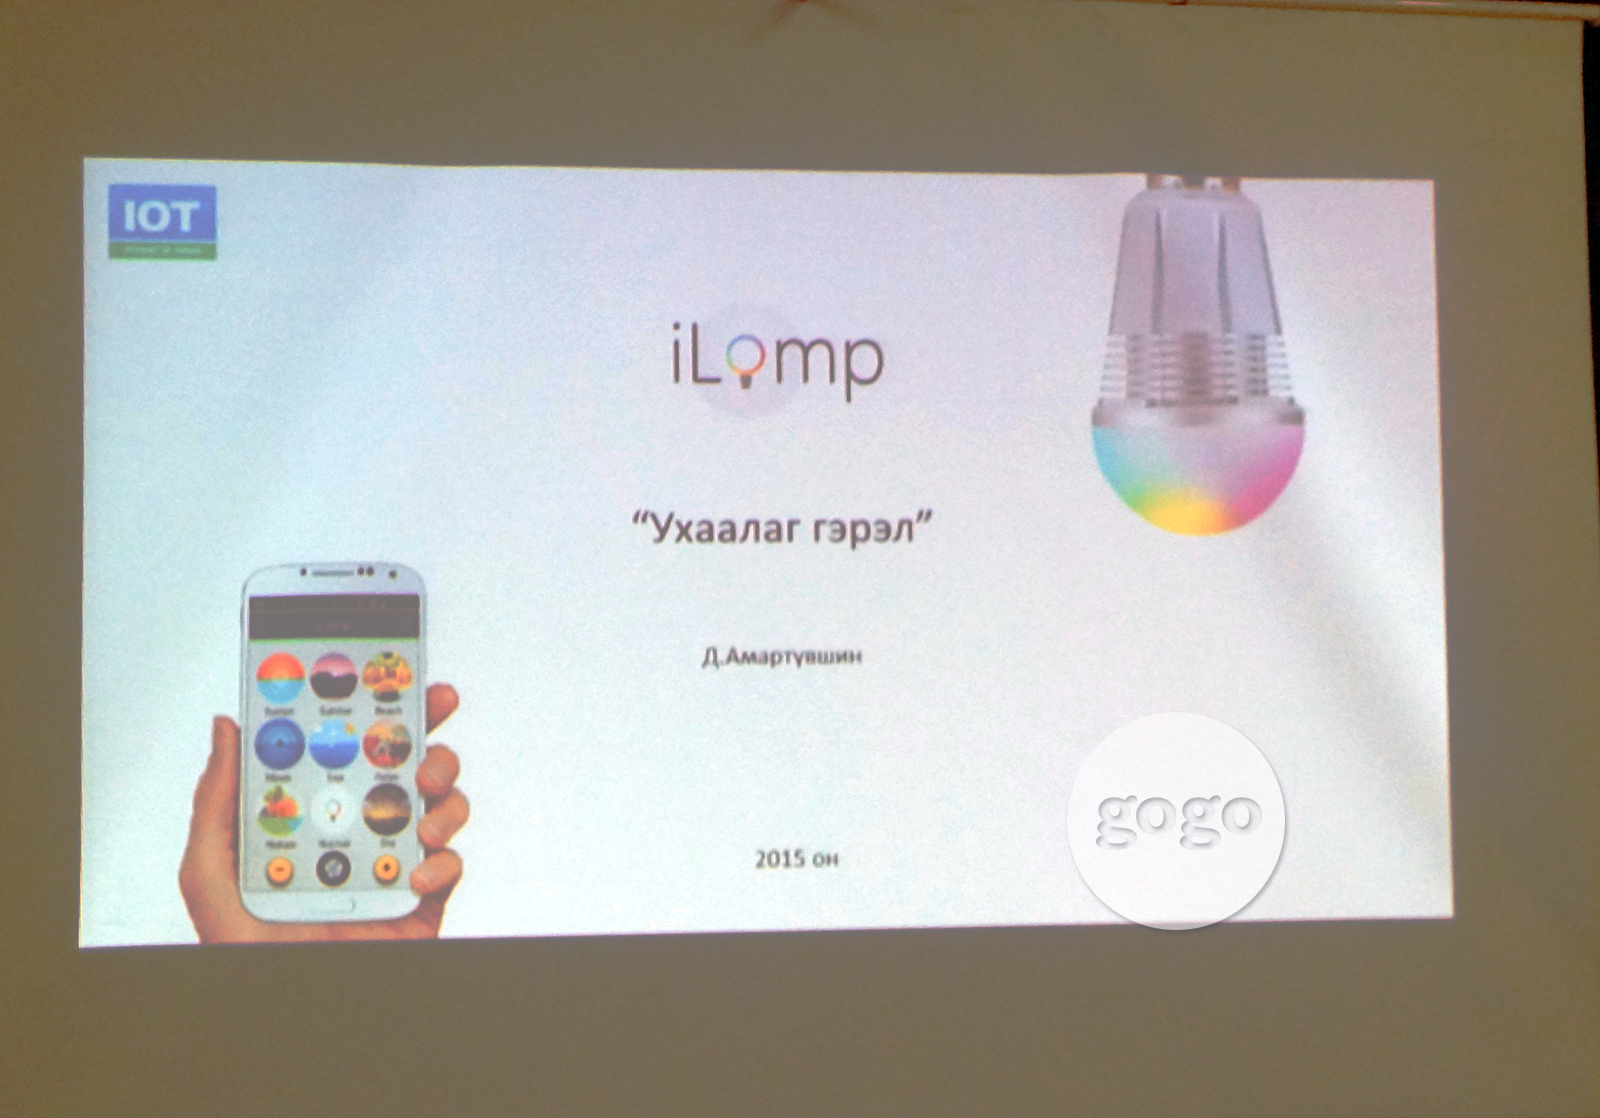 Нэгдүгээр байр эзэлсэн "iLamp" аппликейшний танилцуулга